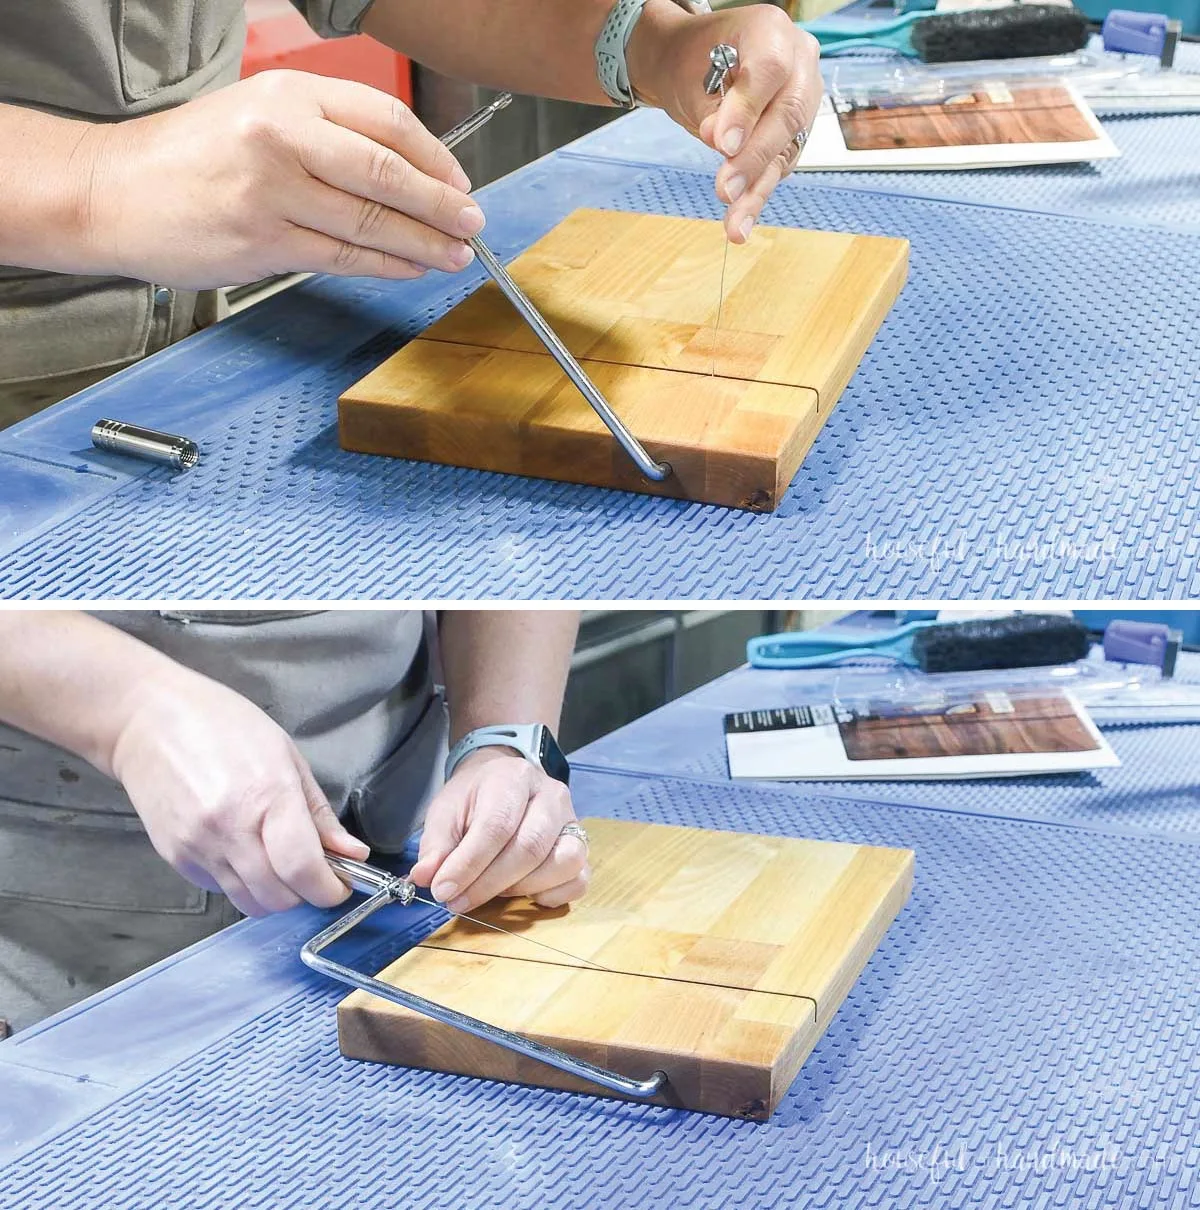 Easy DIY Cheese Slicer from Scrap Wood - Houseful of Handmade